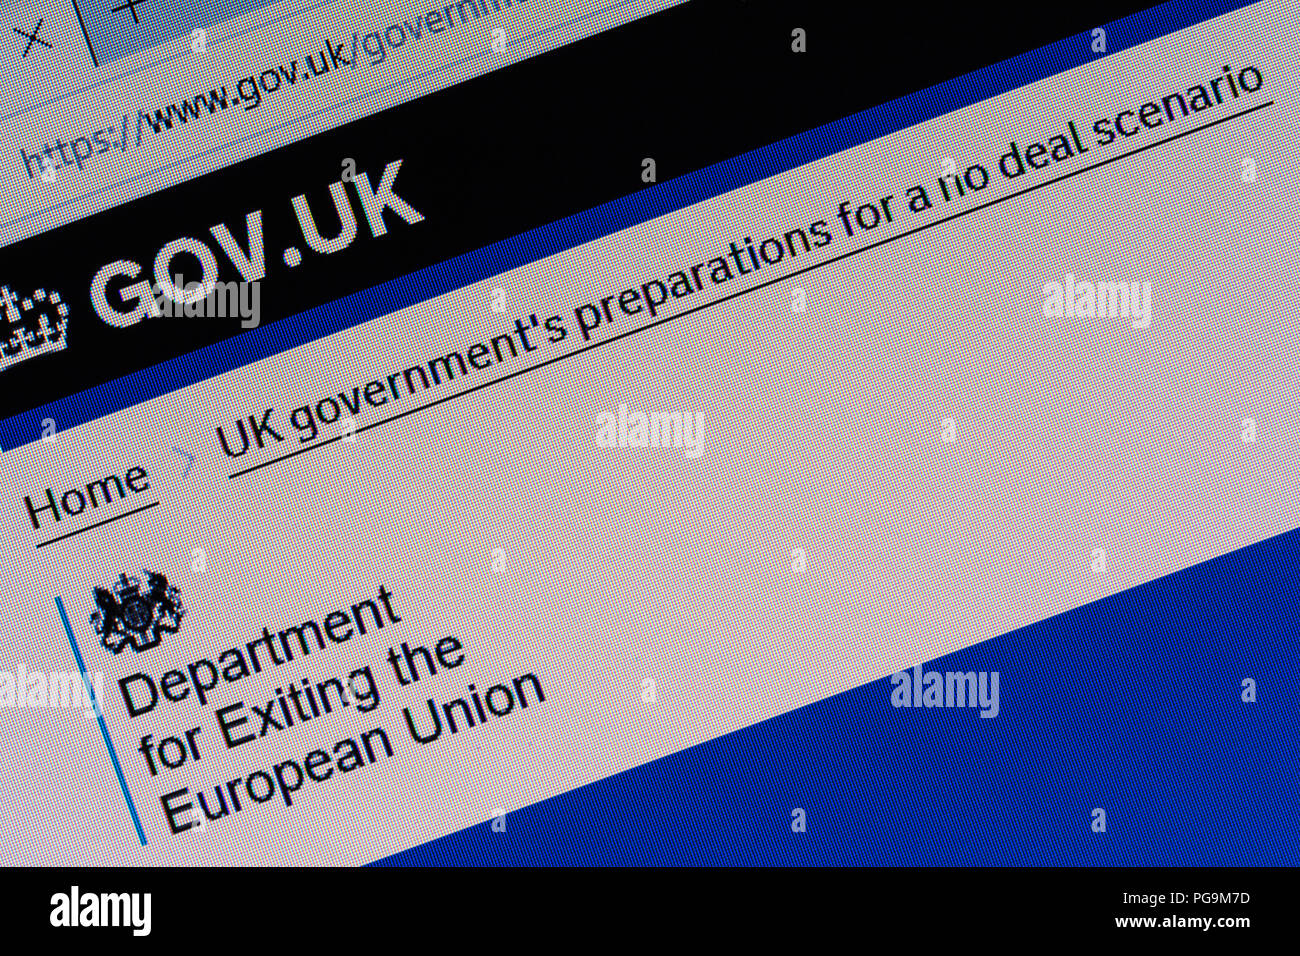 Gov.uk screenshot del sito Web la visualizzazione di informazioni circa il governo del Regno Unito i preparativi per un no deal Brexit scenario, Agosto 2018 Foto Stock